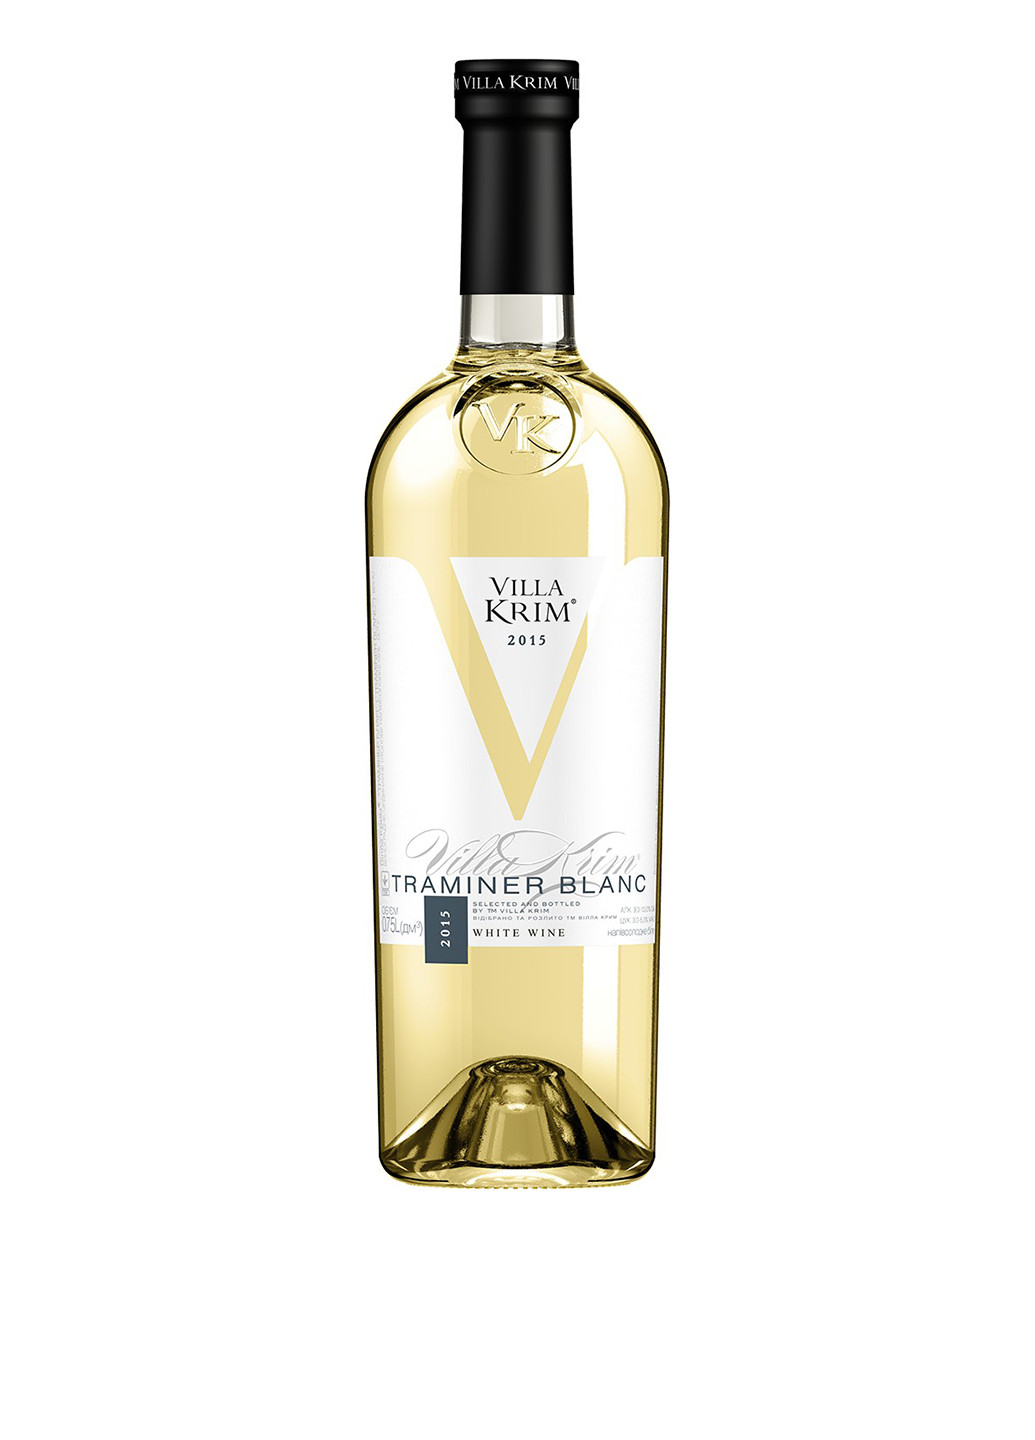 Вино белое полусладкое Траминер, 0,75 л Villa Krim траминер бел. п/сл. 0,75 (224781329)